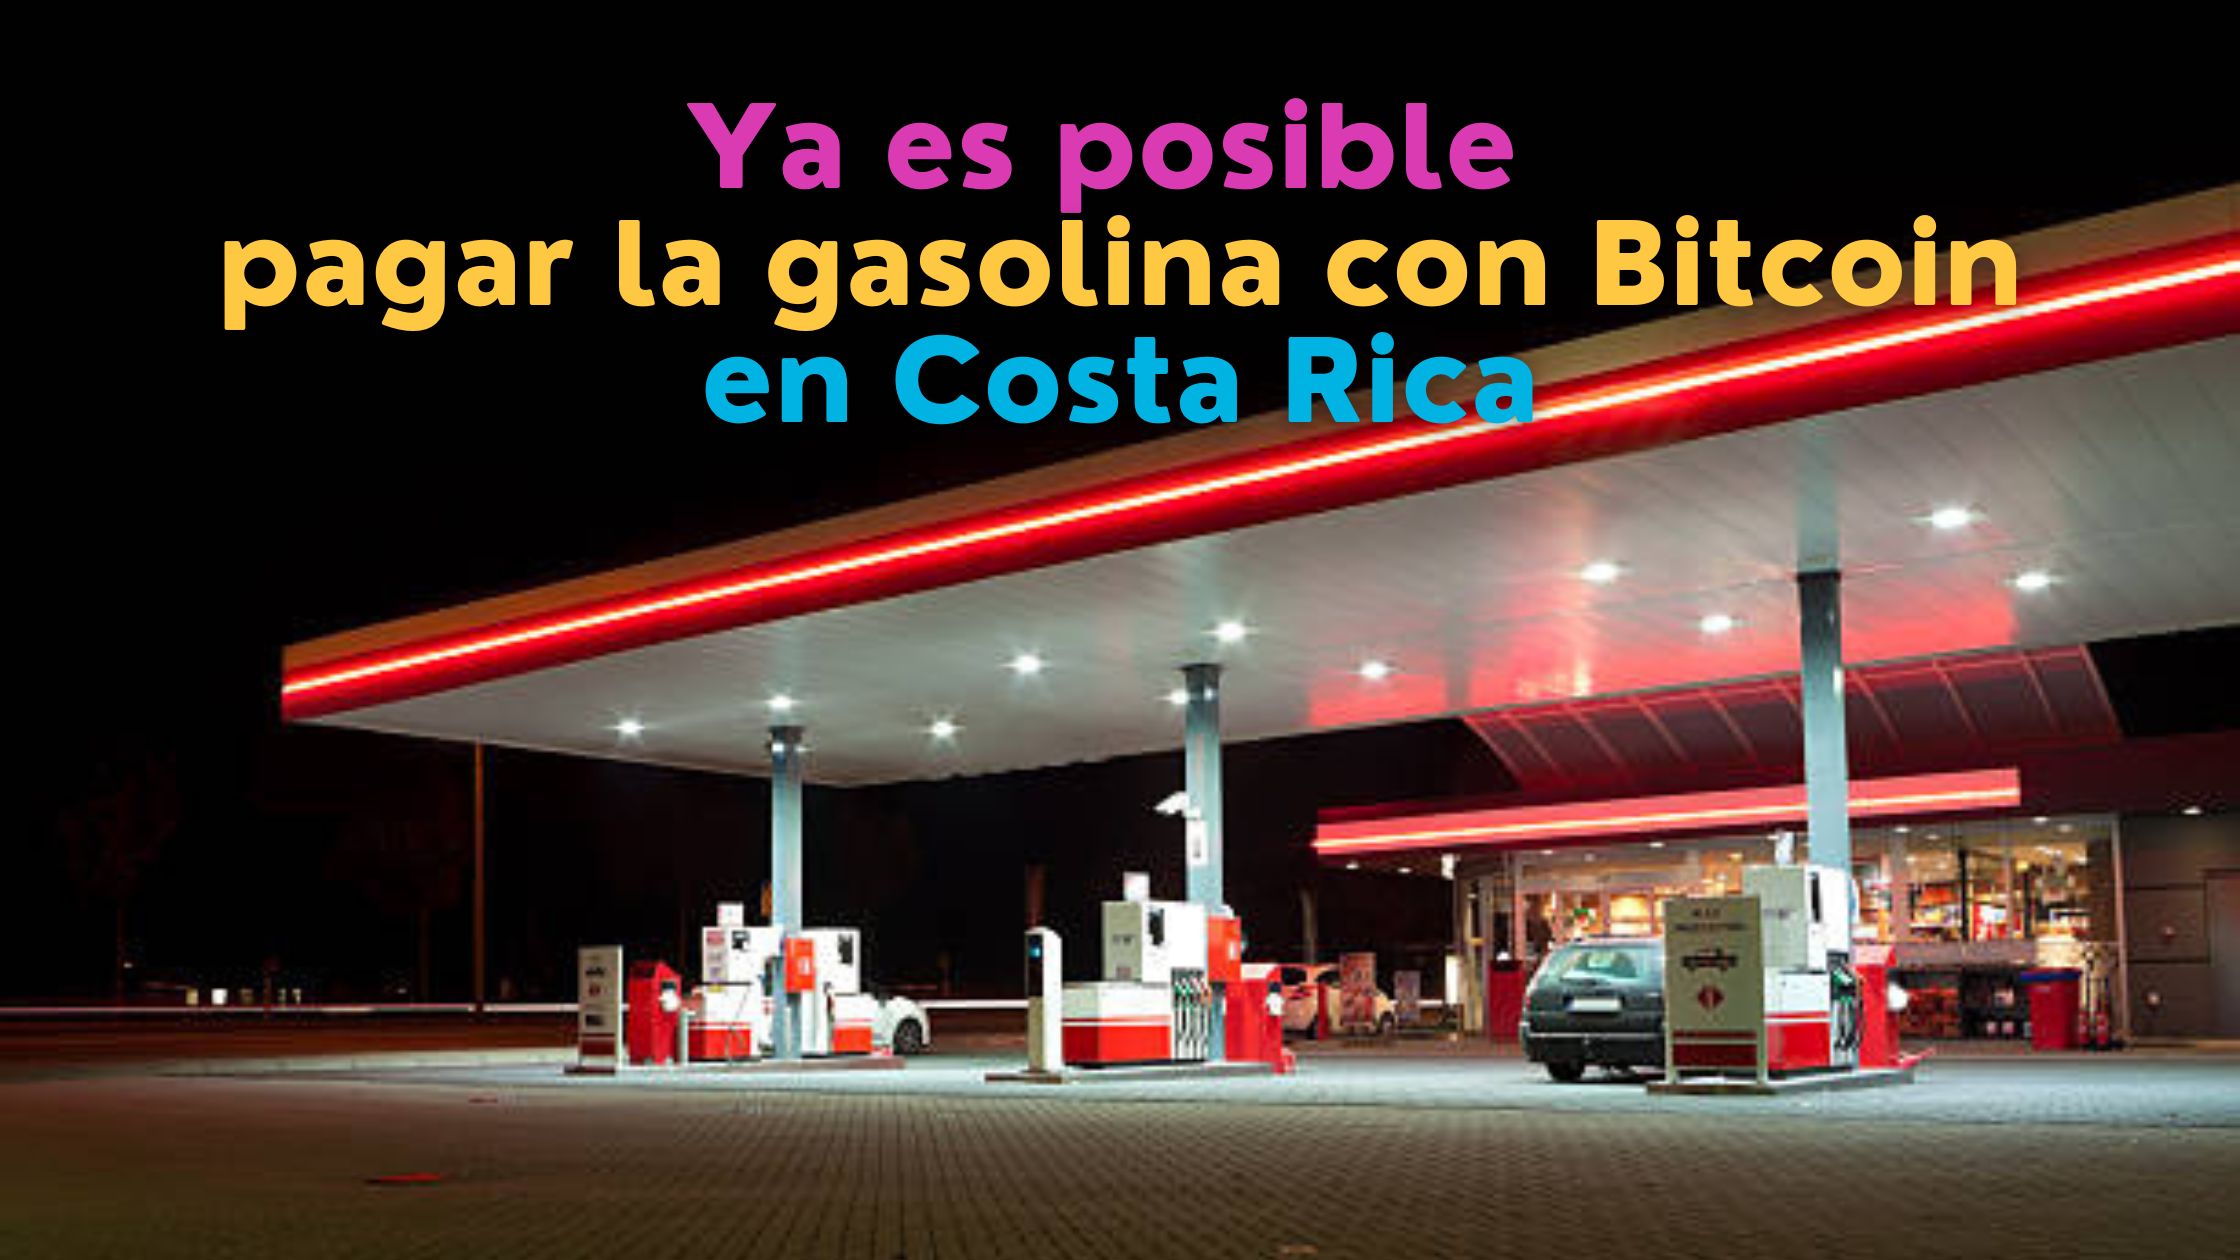 Pagar la gasolina con Bitcoin ya es posible en Costa Rica